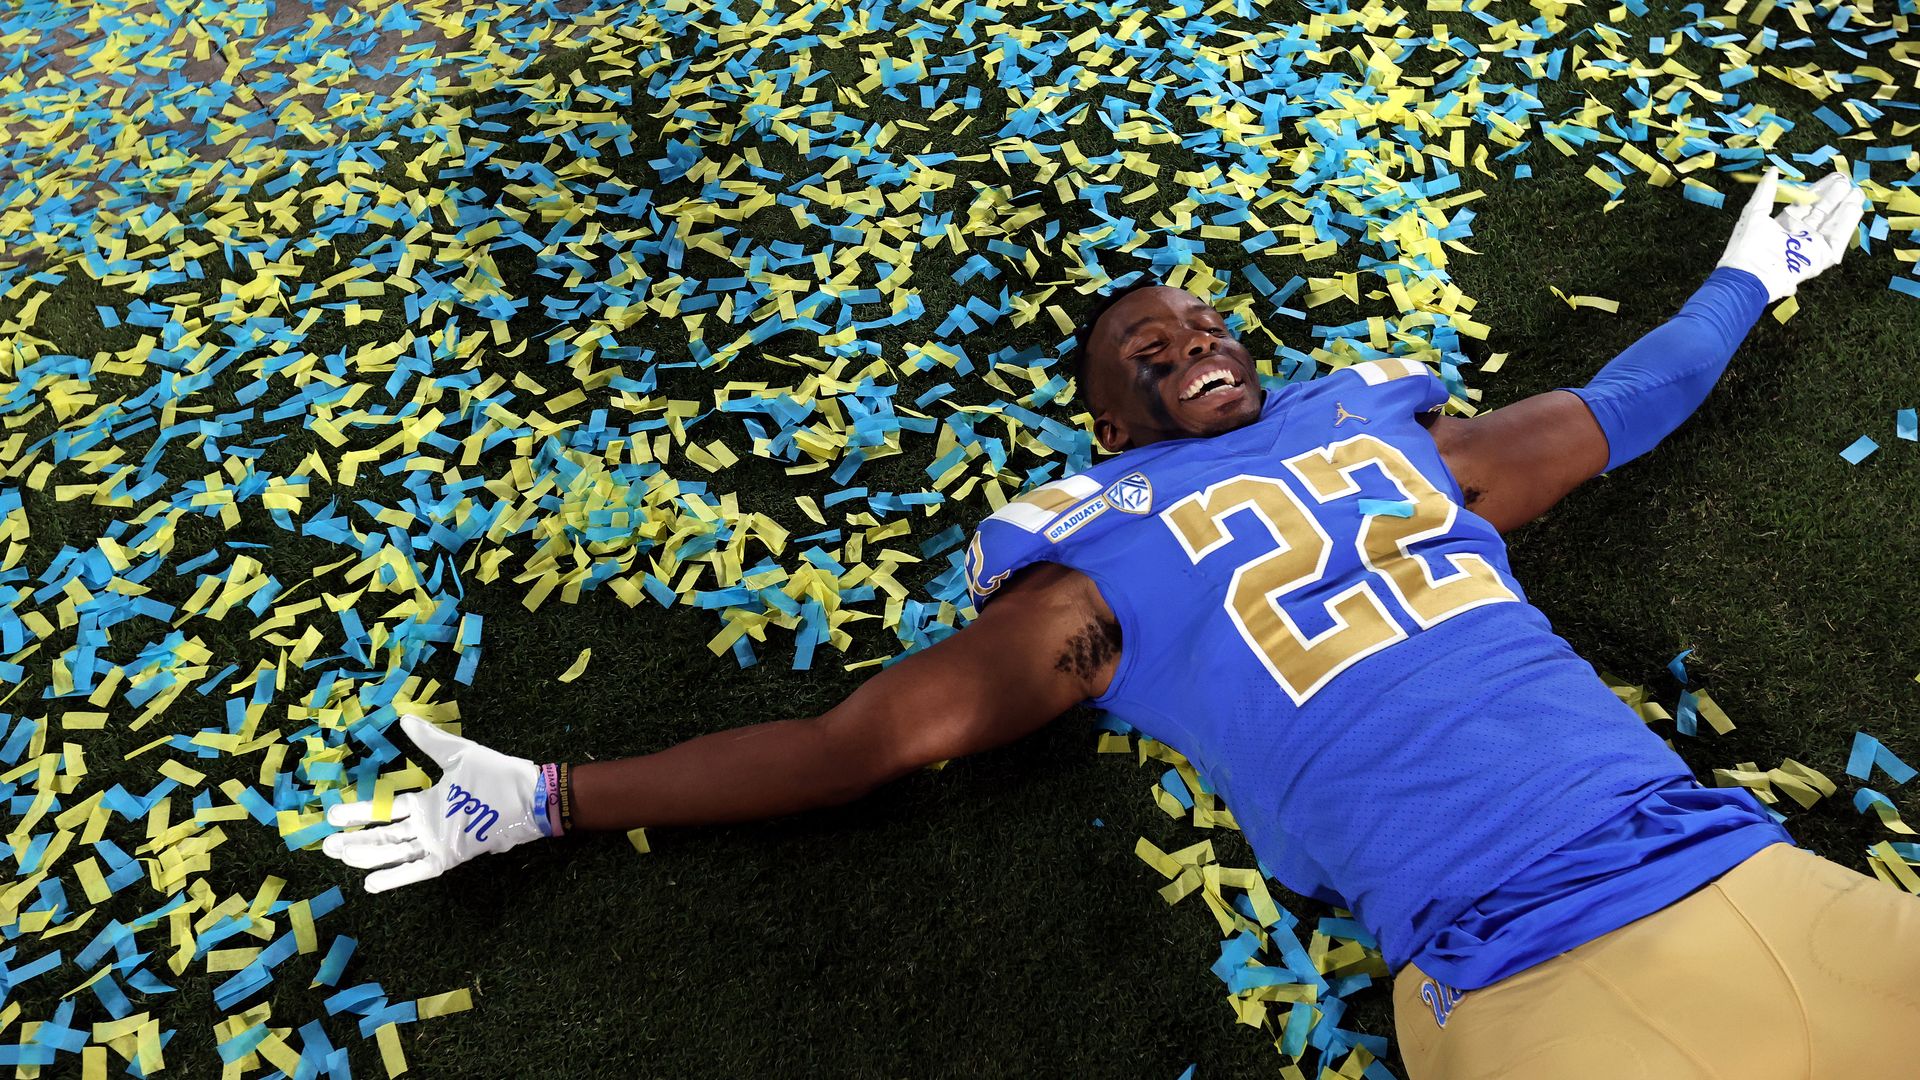 UCLA player celebrating